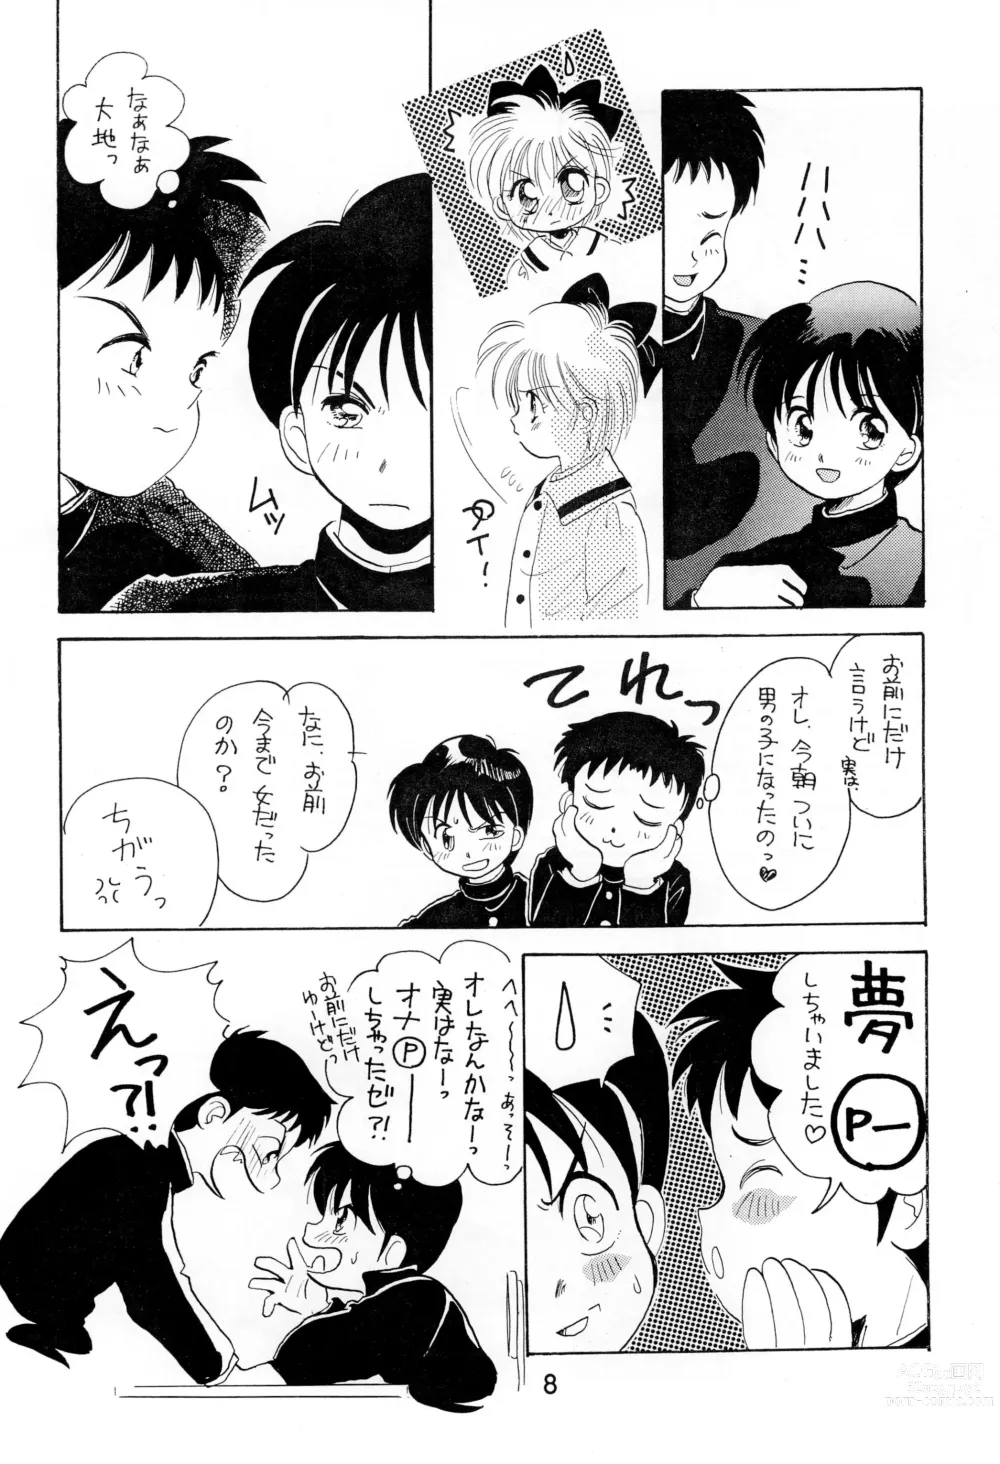 Page 8 of doujinshi Uwasa no Himeko